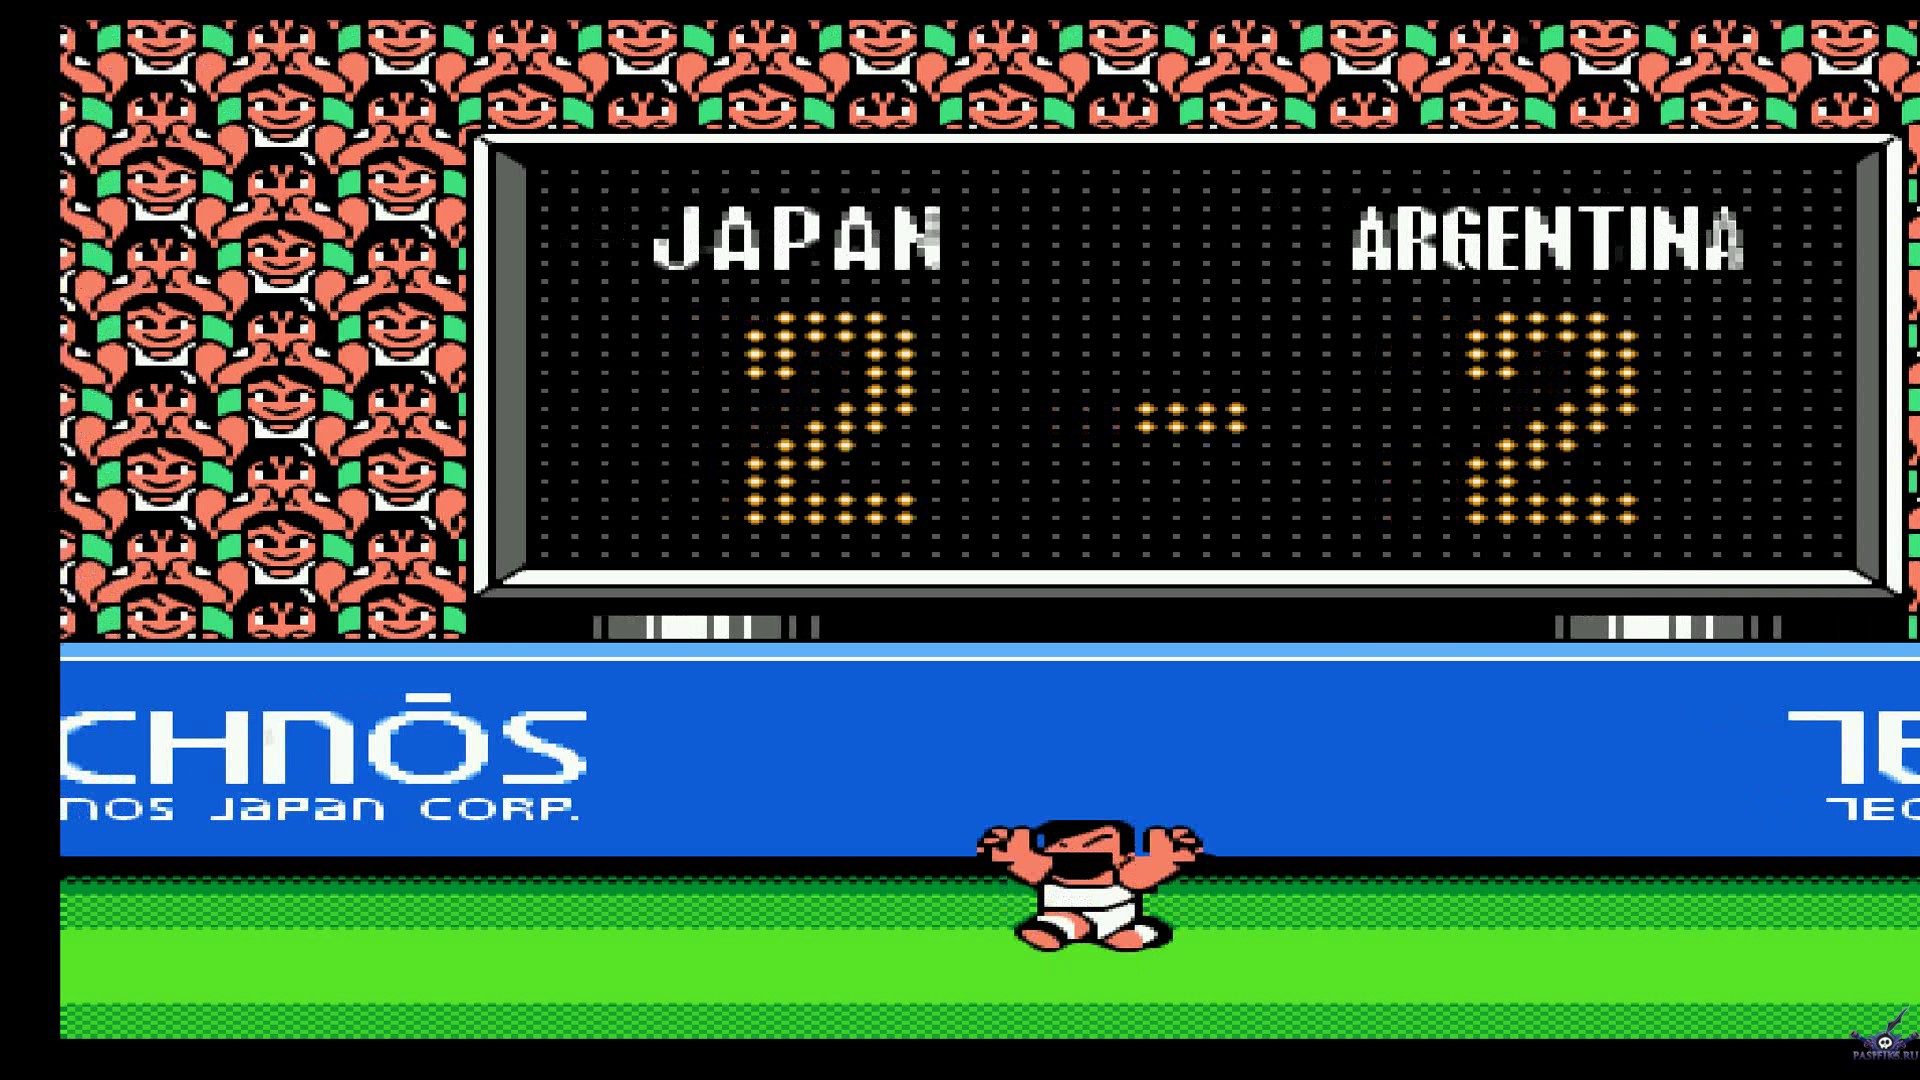 kunio-kun-no-nekketsu-soccer-league-screenshot